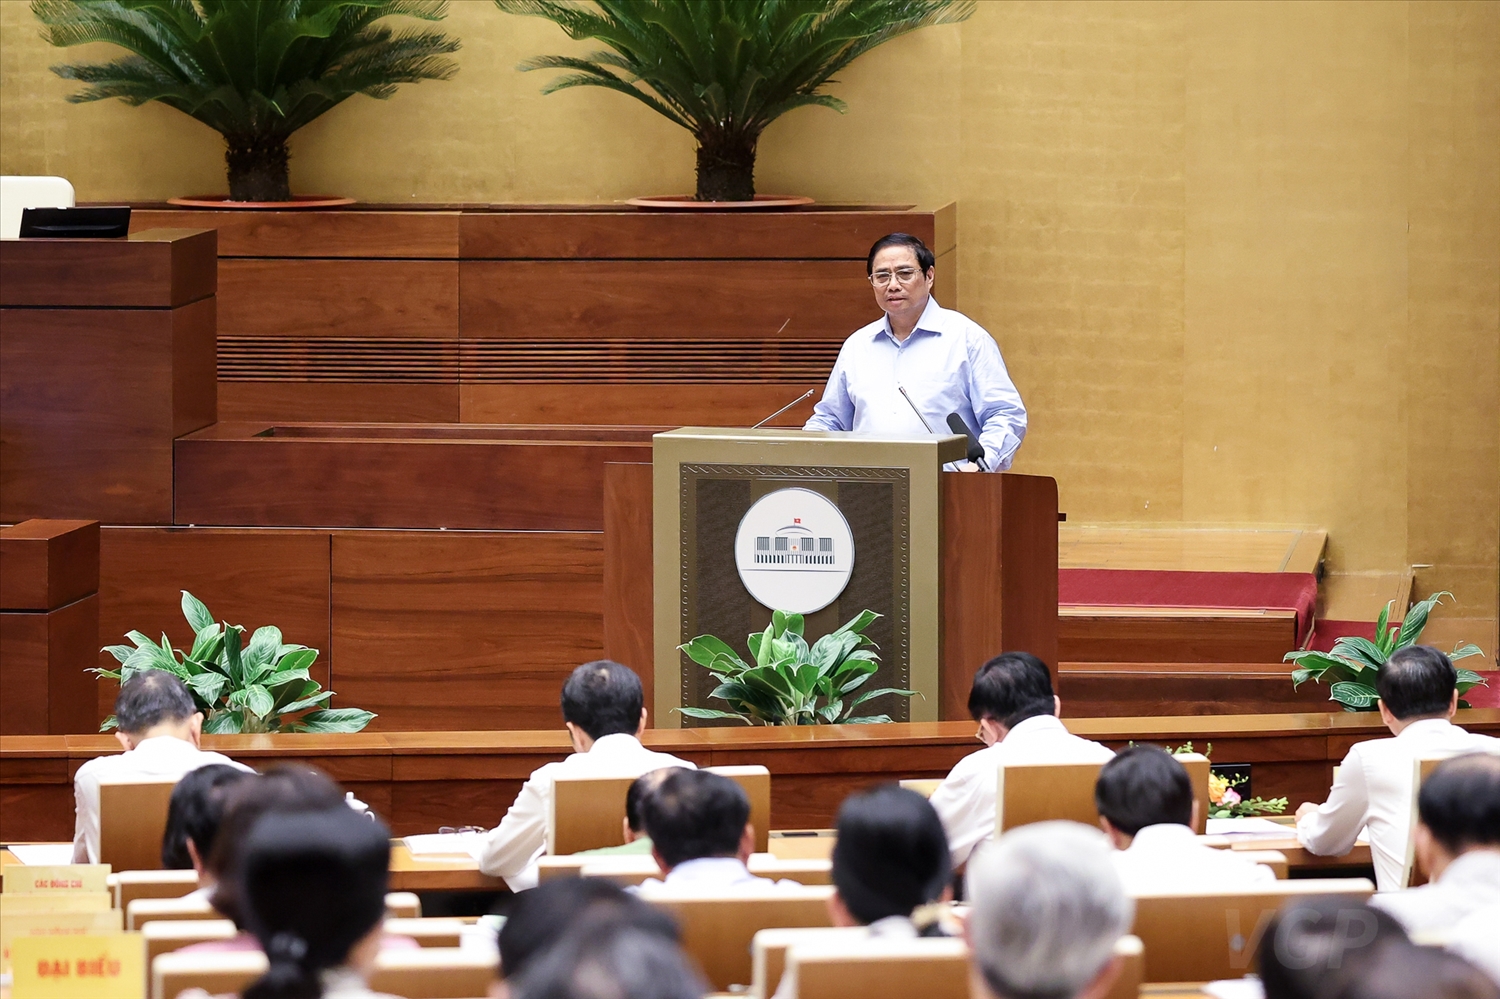 Thủ tướng Chính phủ Phạm Minh Chính trình bày chuyên đề giới thiệu về "Tiếp tục đổi mới, hoàn thiện thể chế, chính sách, nâng cao hiệu lực, hiệu quả quản lý và sử dụng đất, tạo động lực đưa nước ta trở thành nước phát triển có thu nhập cao" - Ảnh: VGP/Nhật Bắc